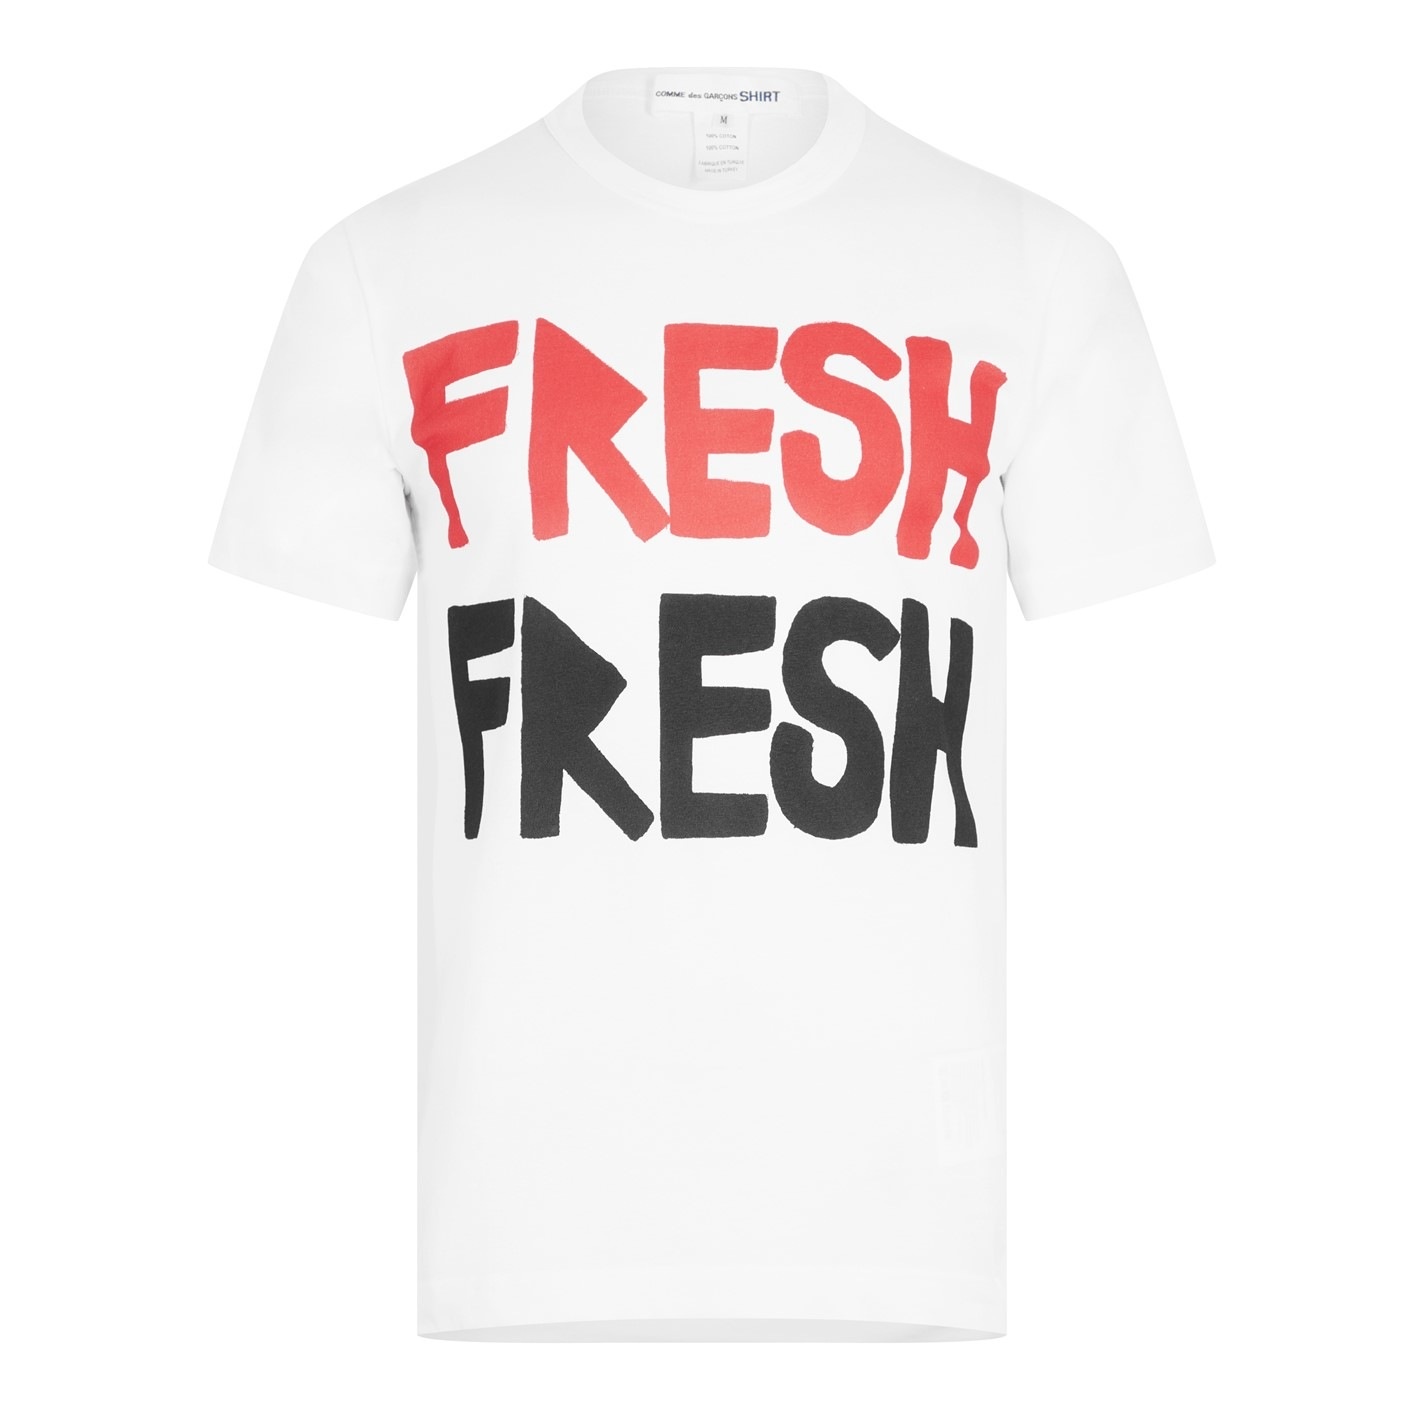 'Fresh Fresh' Print T-Shirt - 1